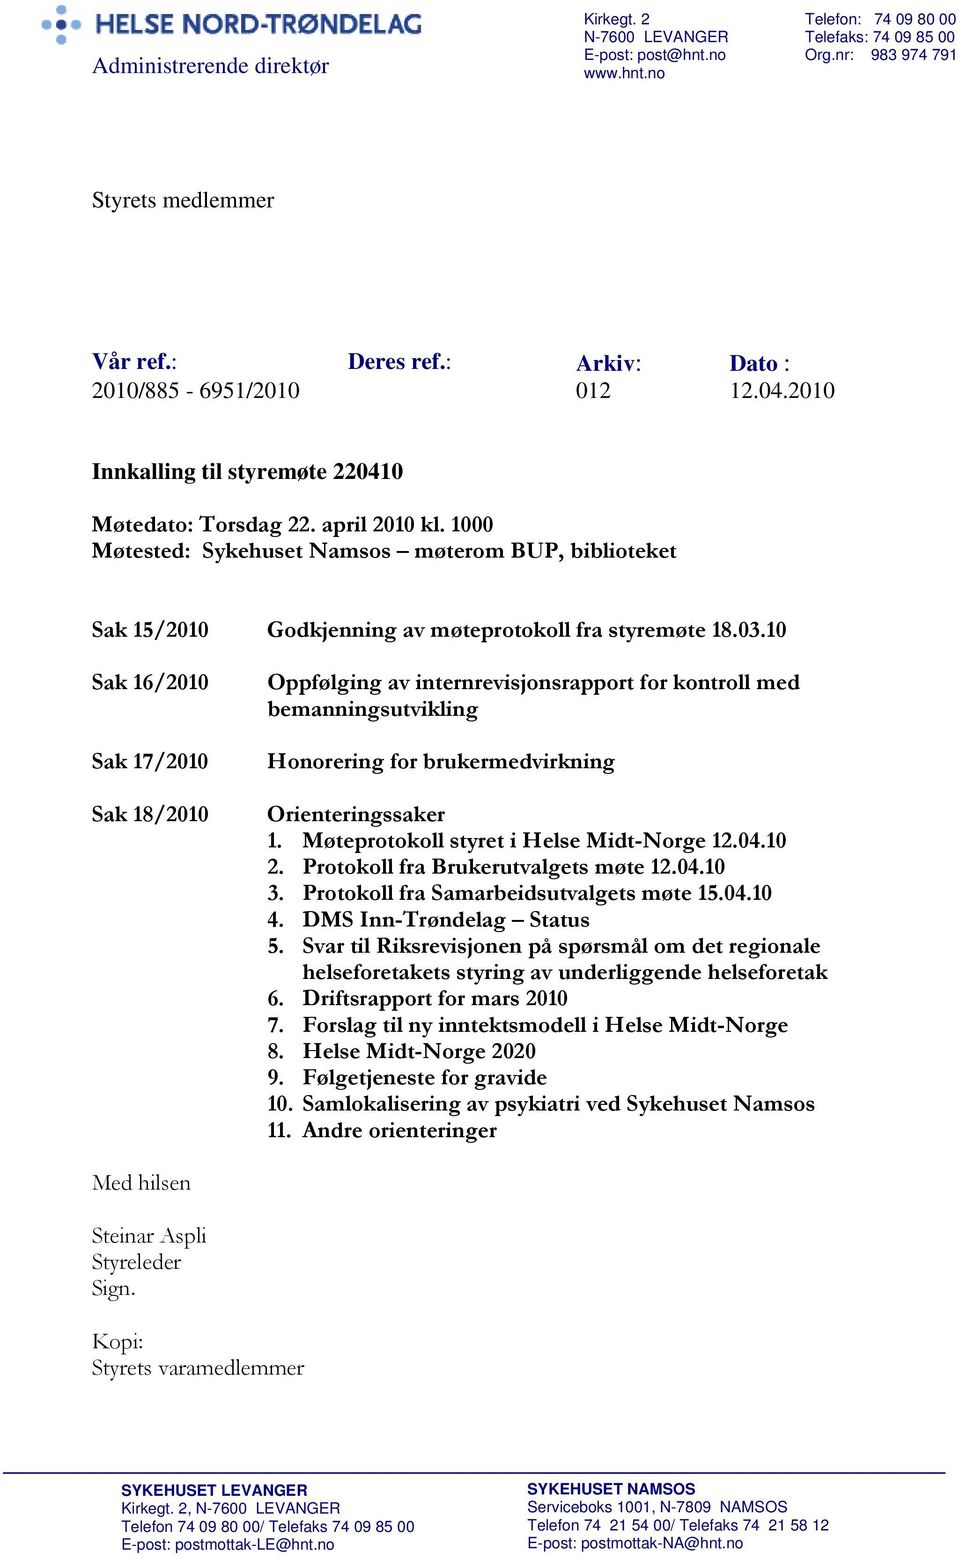 1000 Møtested: Sykehuset Namsos møterom BUP, biblioteket Sak 15/2010 Godkjenning av møteprotokoll fra styremøte 18.03.